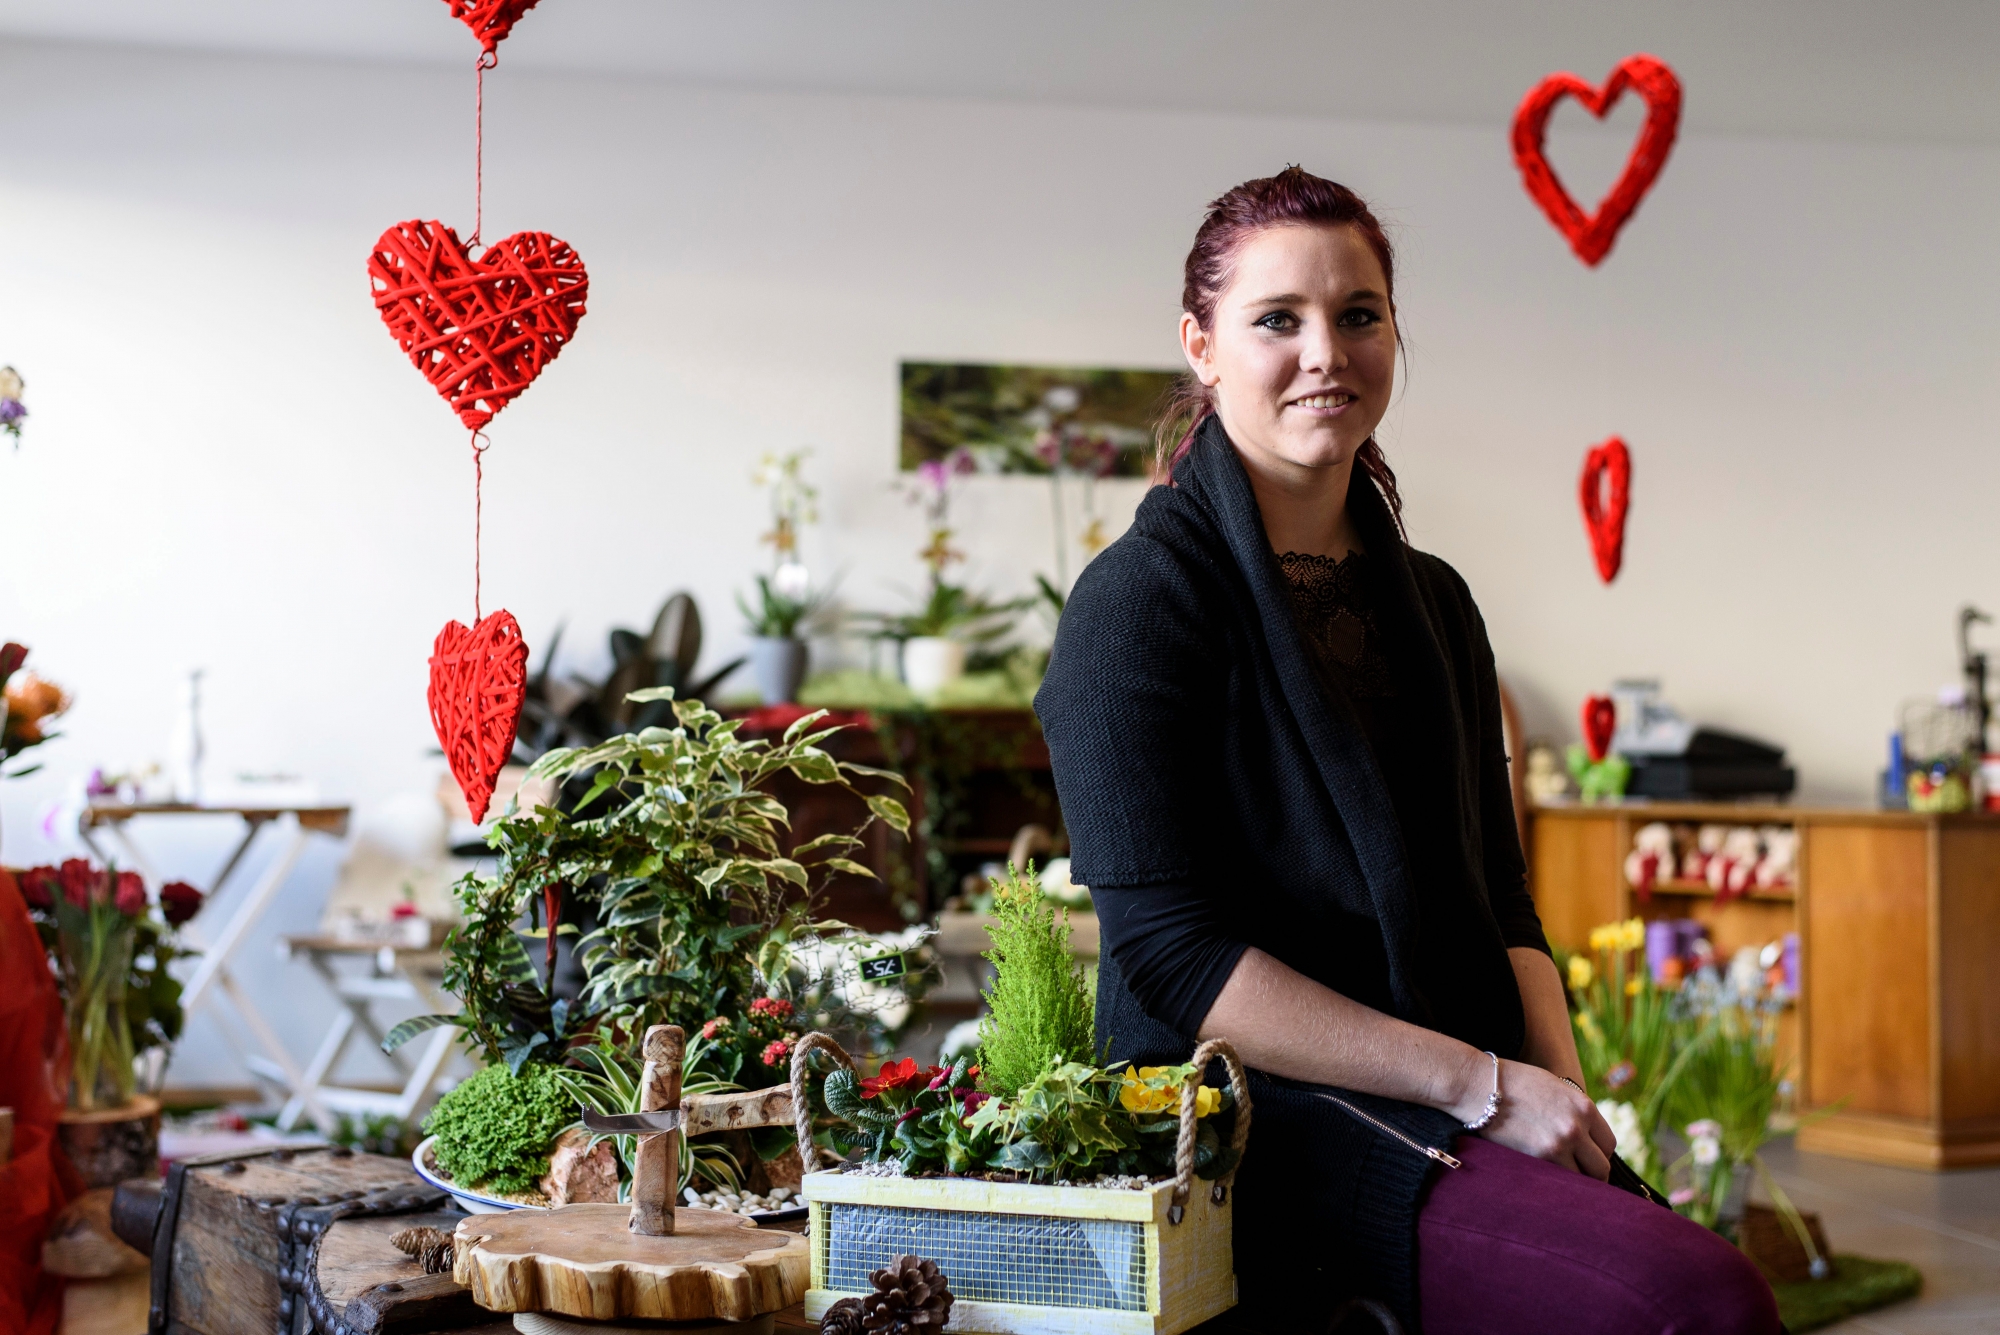 Le Vaud, jeudi 11.02.2016, portrait de Noémie Germain qui ouvre un magasin de fleur : "La Vie en Rose" à Le Vaud, photos Cédric Sandoz